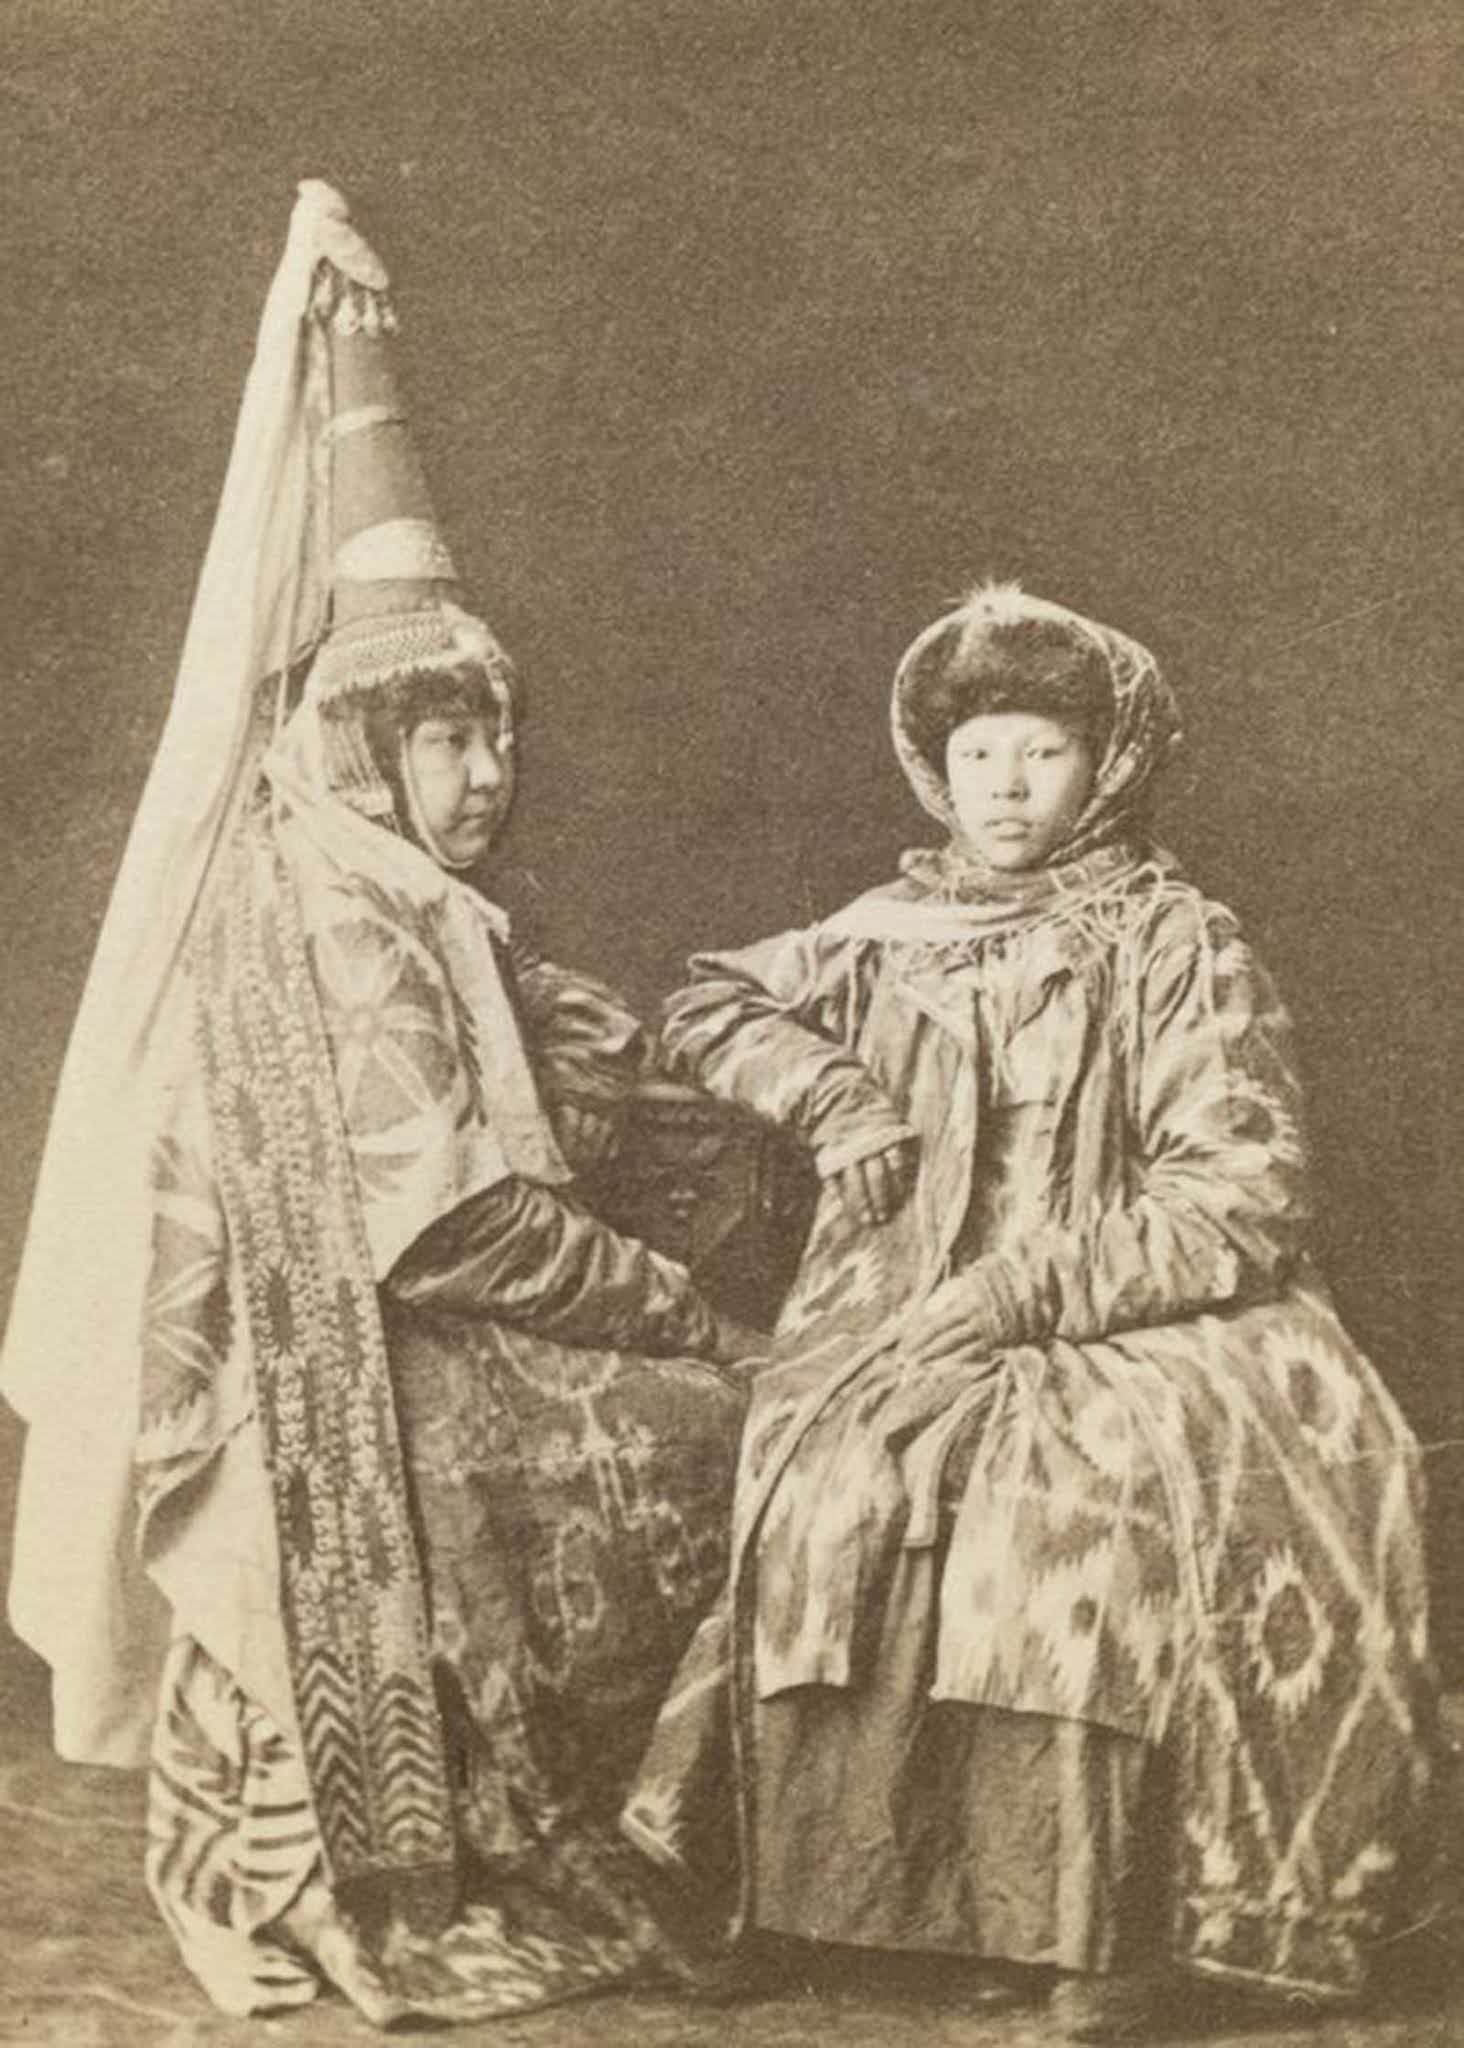 Two Kazakh women, including a bride (left).